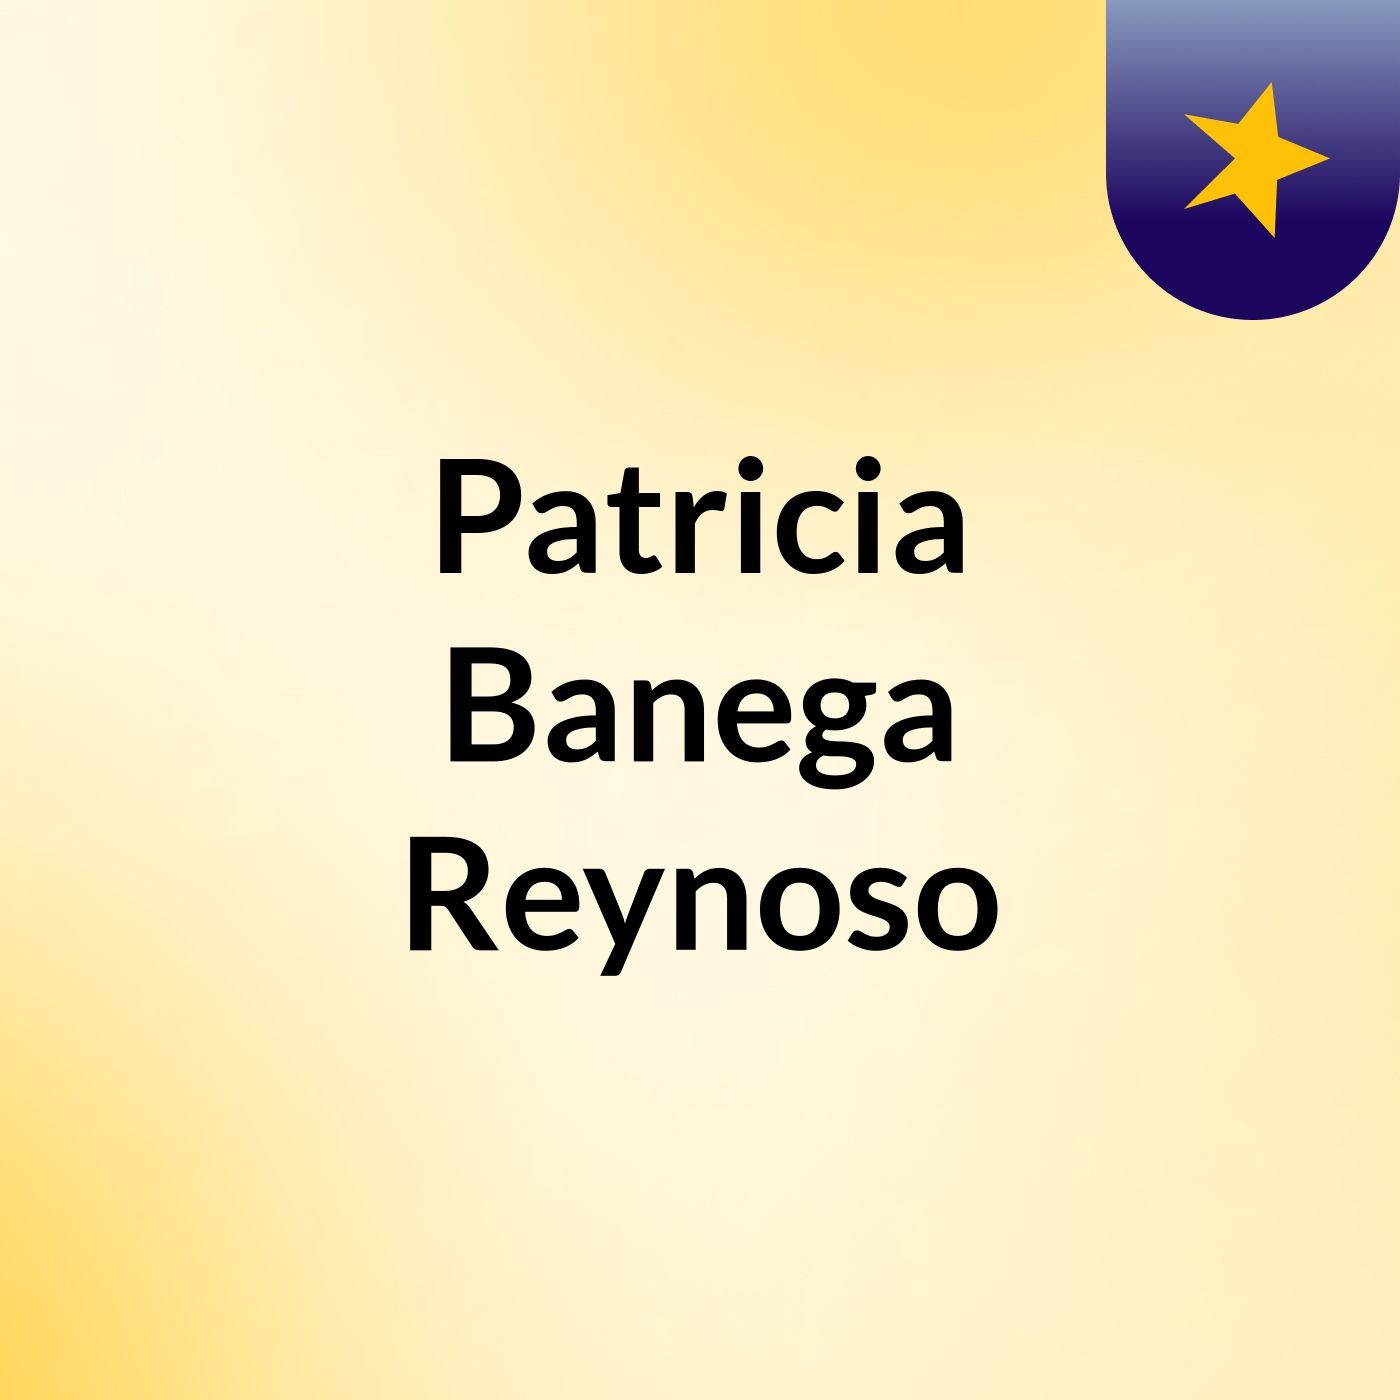 Patricia Banega Reynoso